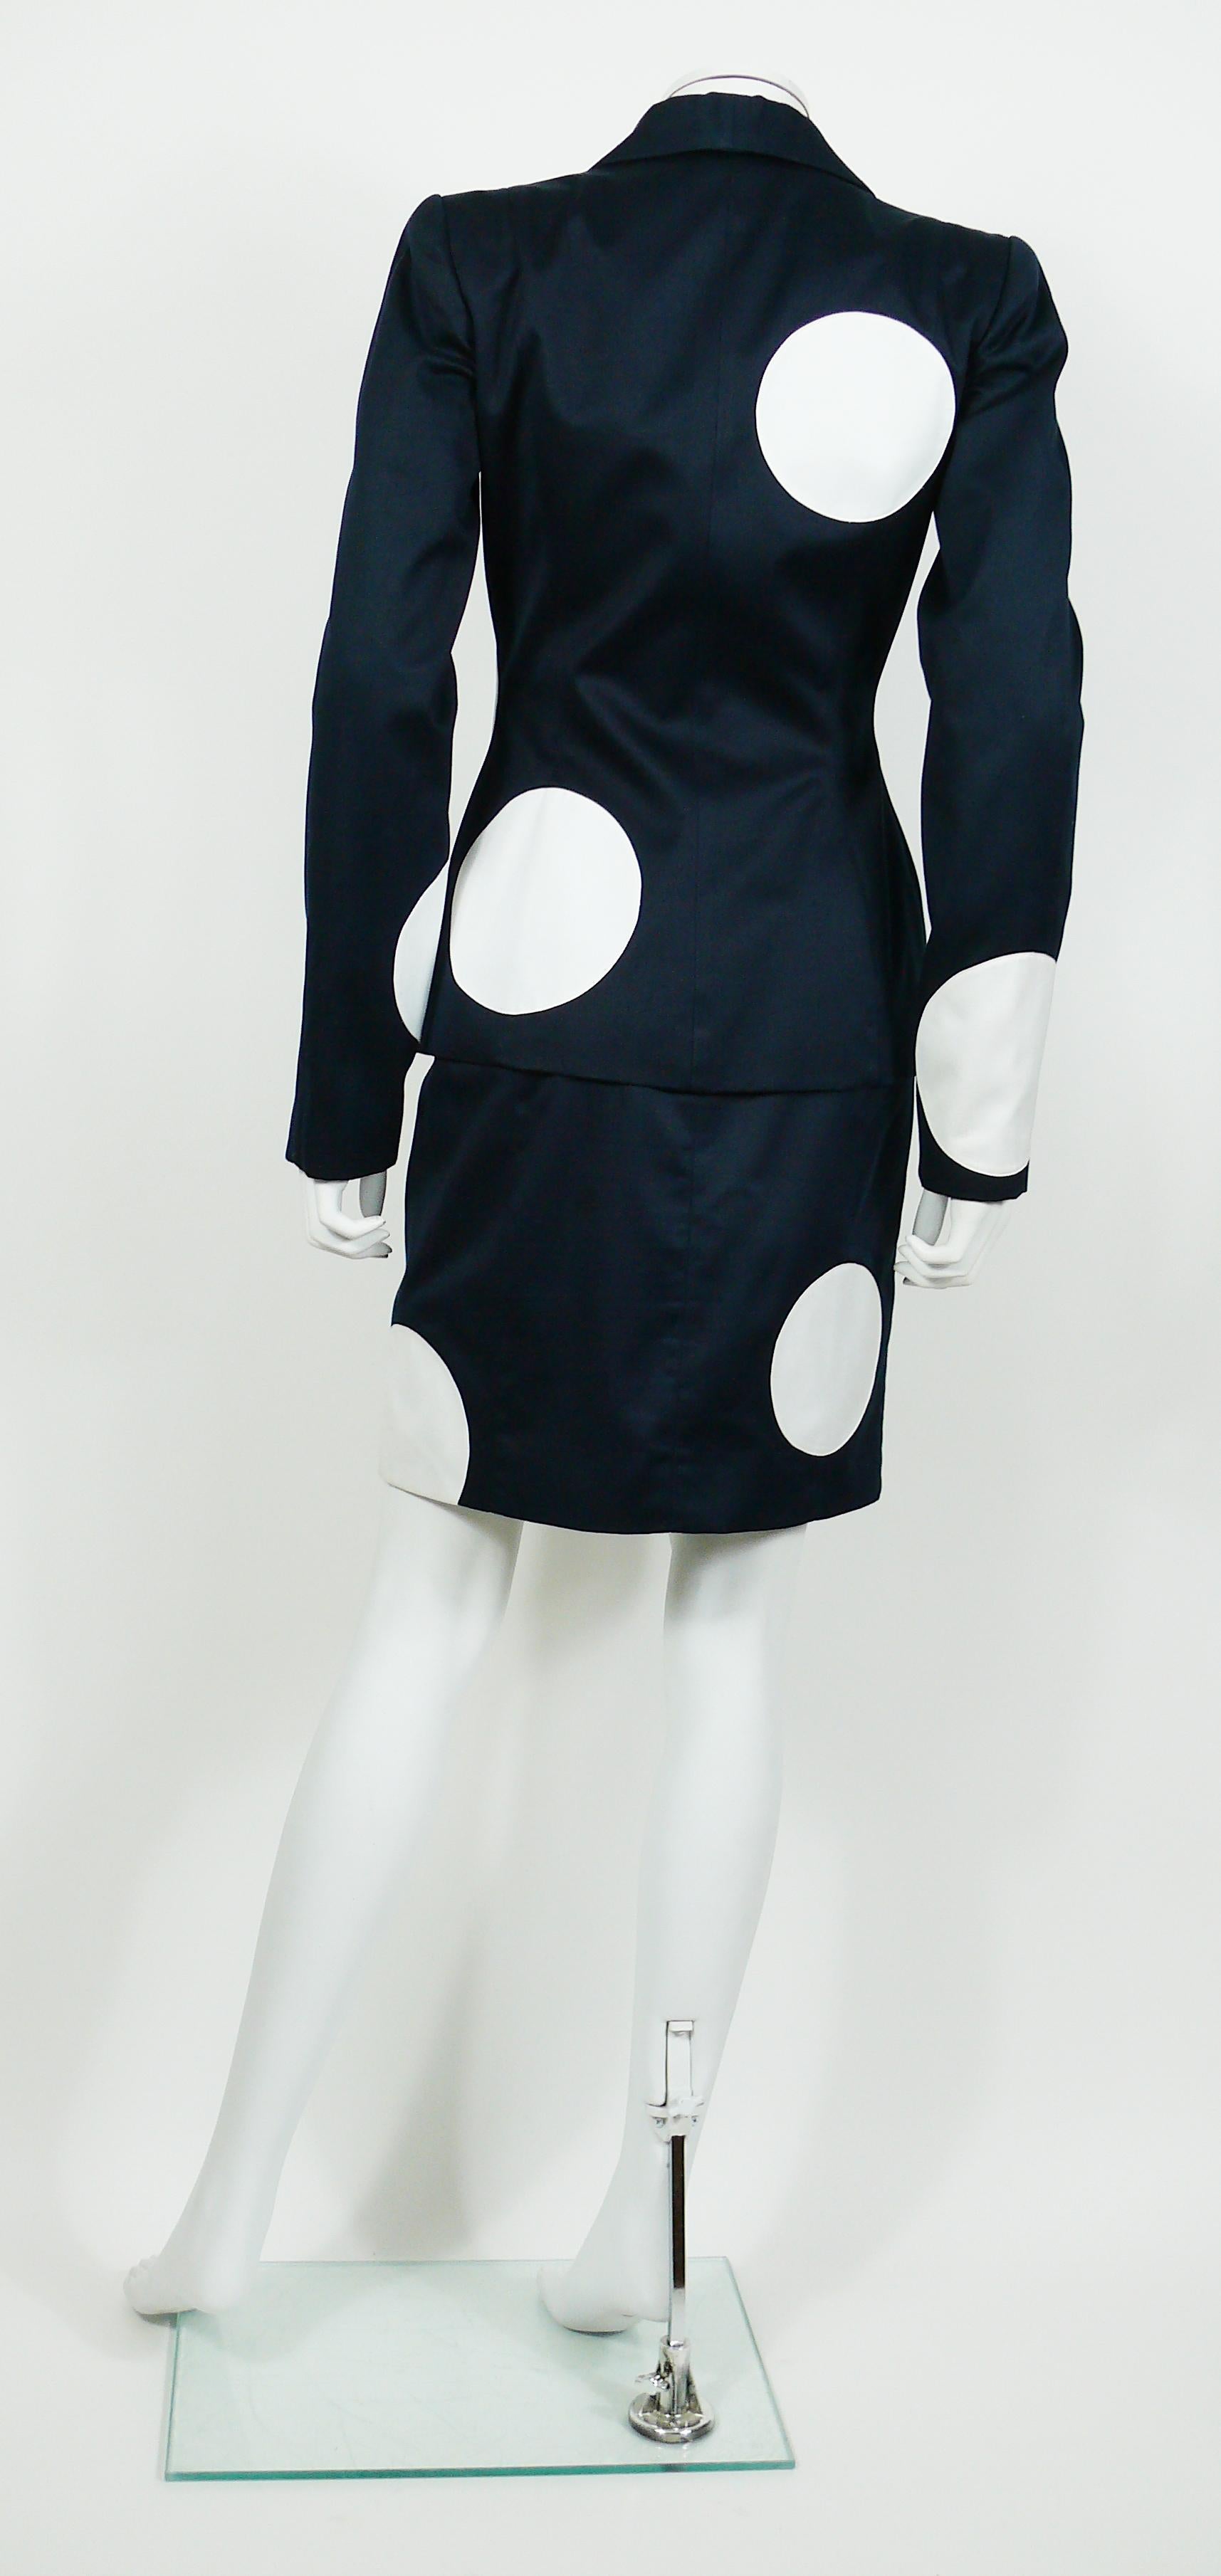 polka dot dress with blazer